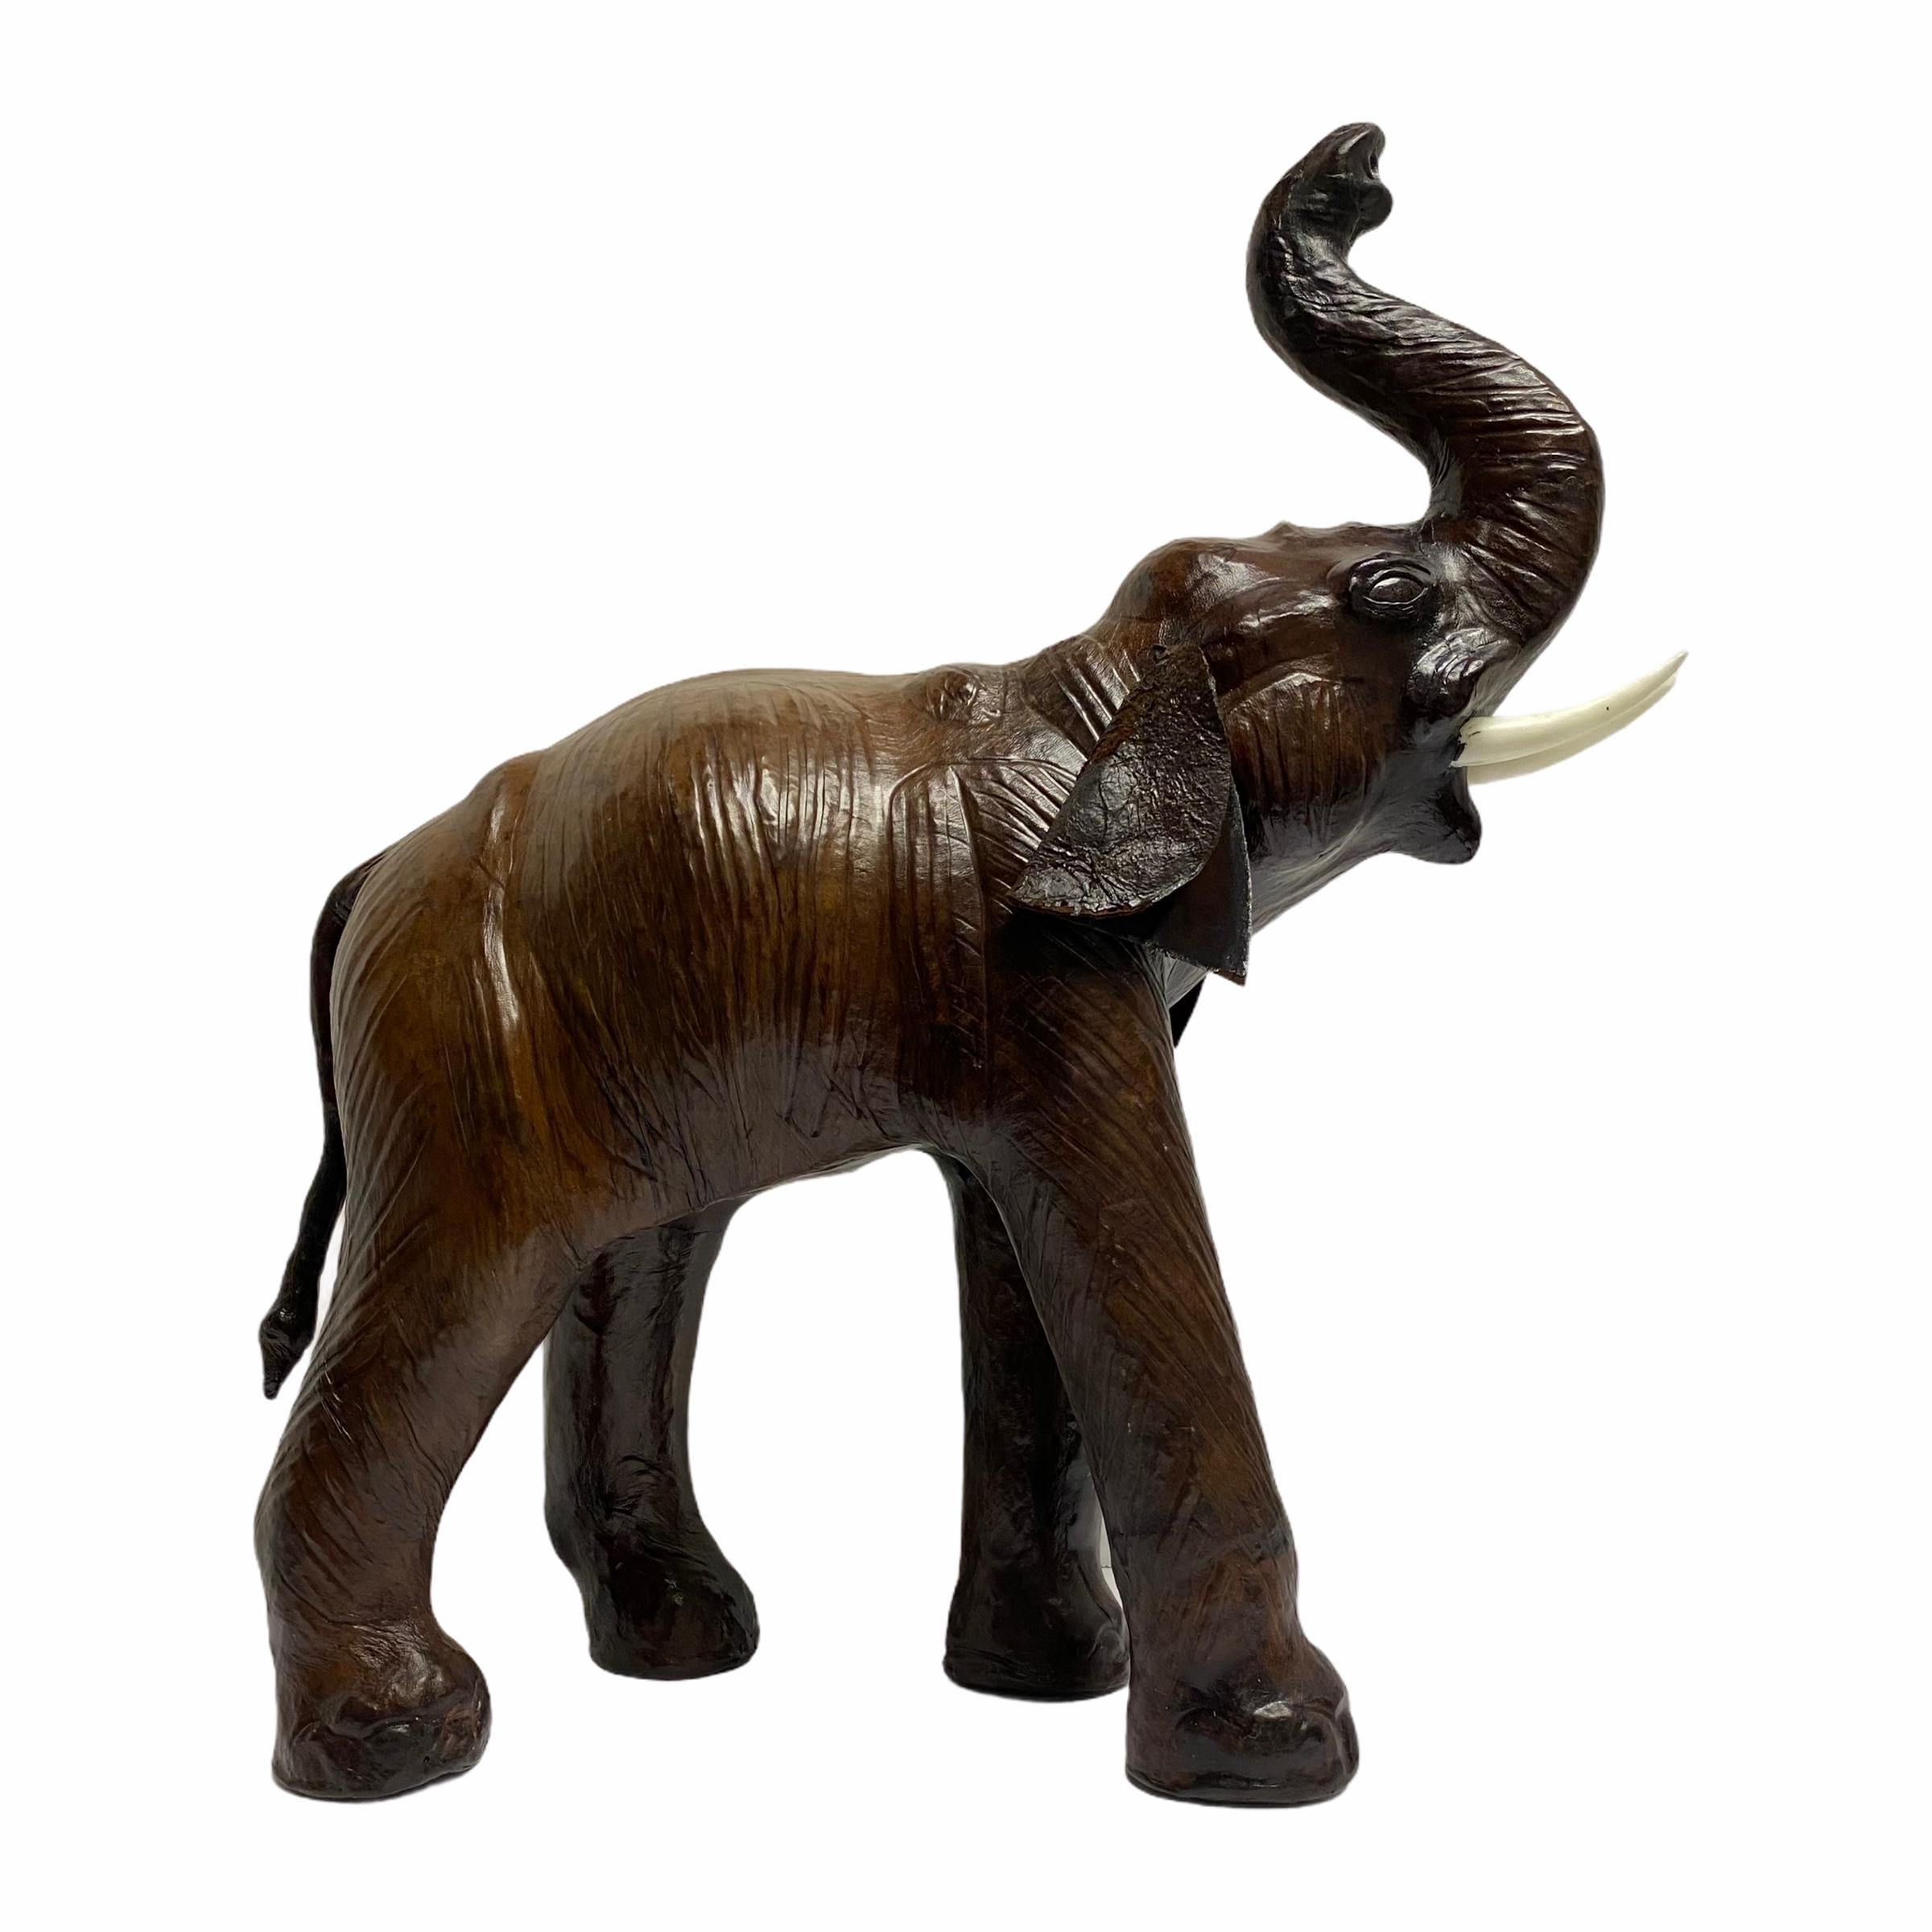 Vintage leather elephant figure.